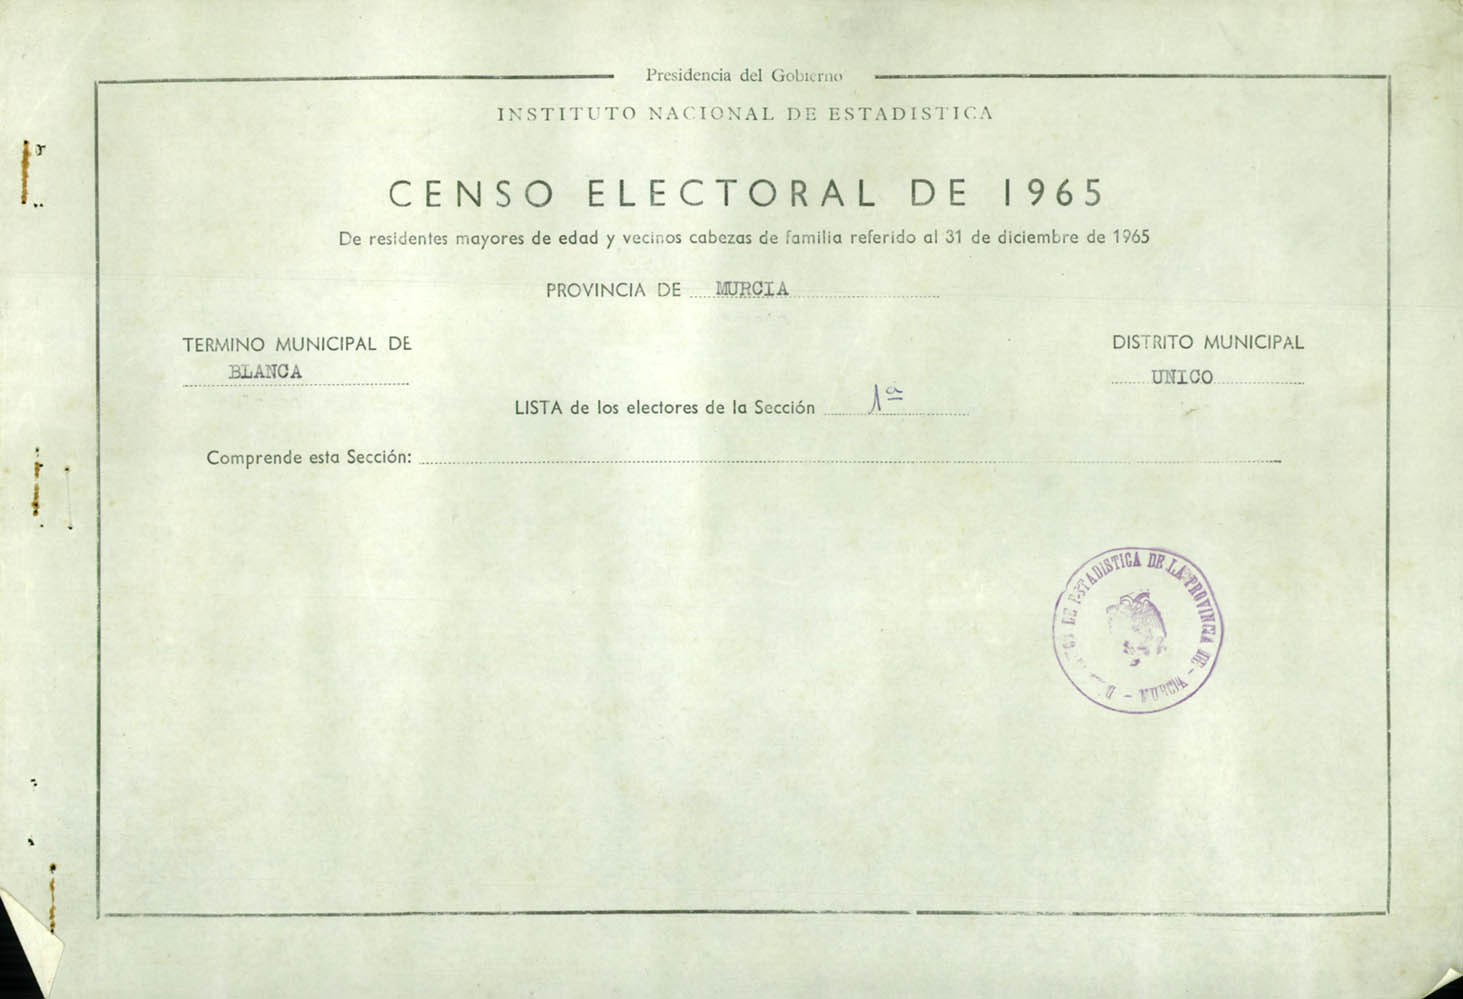 Censo electoral provincial de 1965: listas definitivas de Blanca, Distrito Unico, sección 1º.